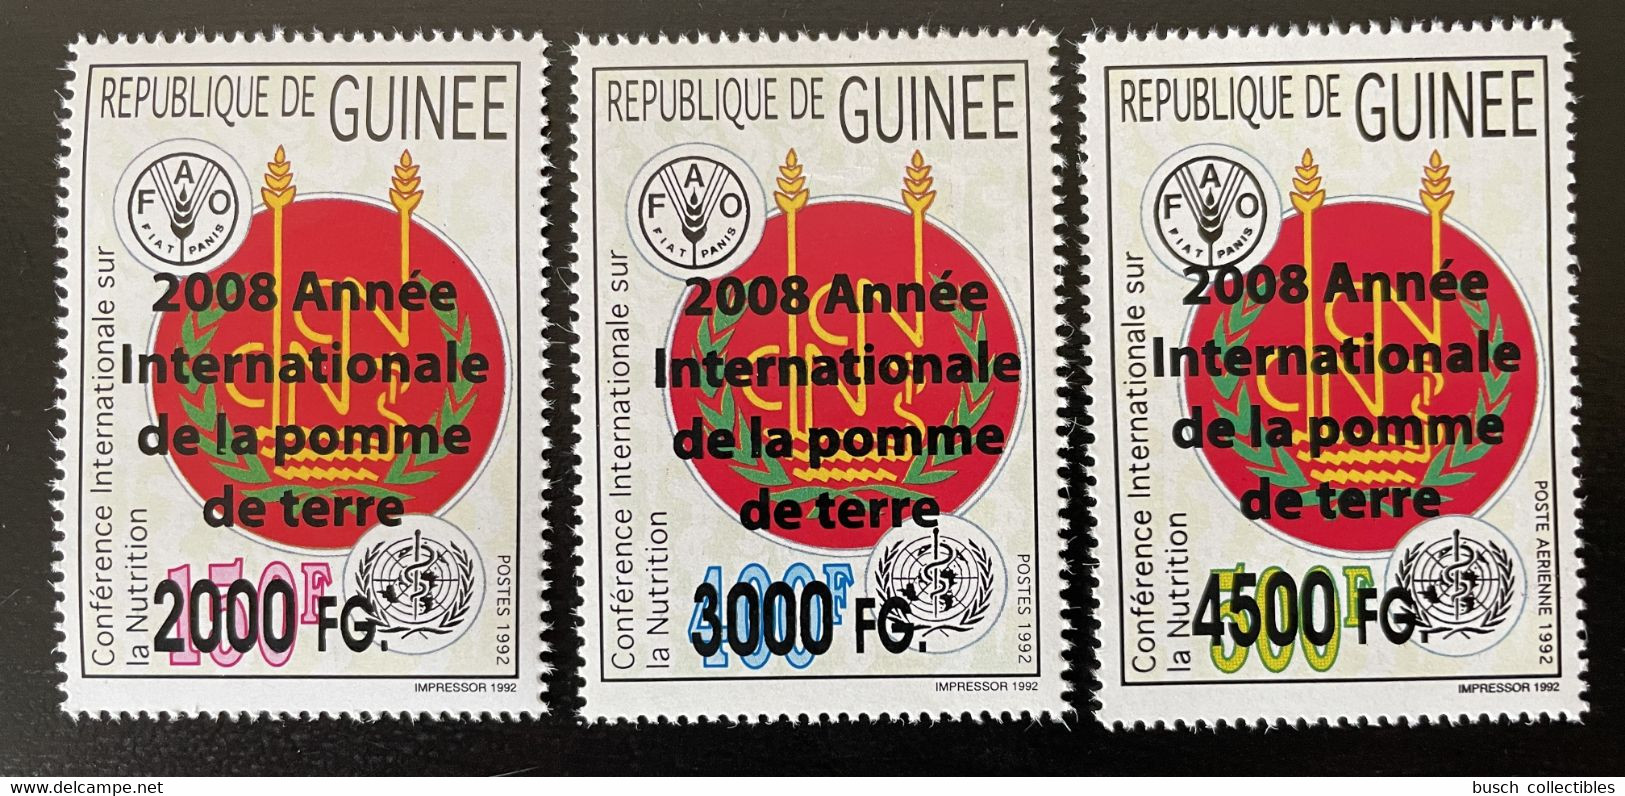 Guinée Guinea 2008 Mi. 6186 / 6188 Surchargé Overprint Année Internationale De La Pomme De Terre FAO Food UN 3 Val. - Guinea (1958-...)